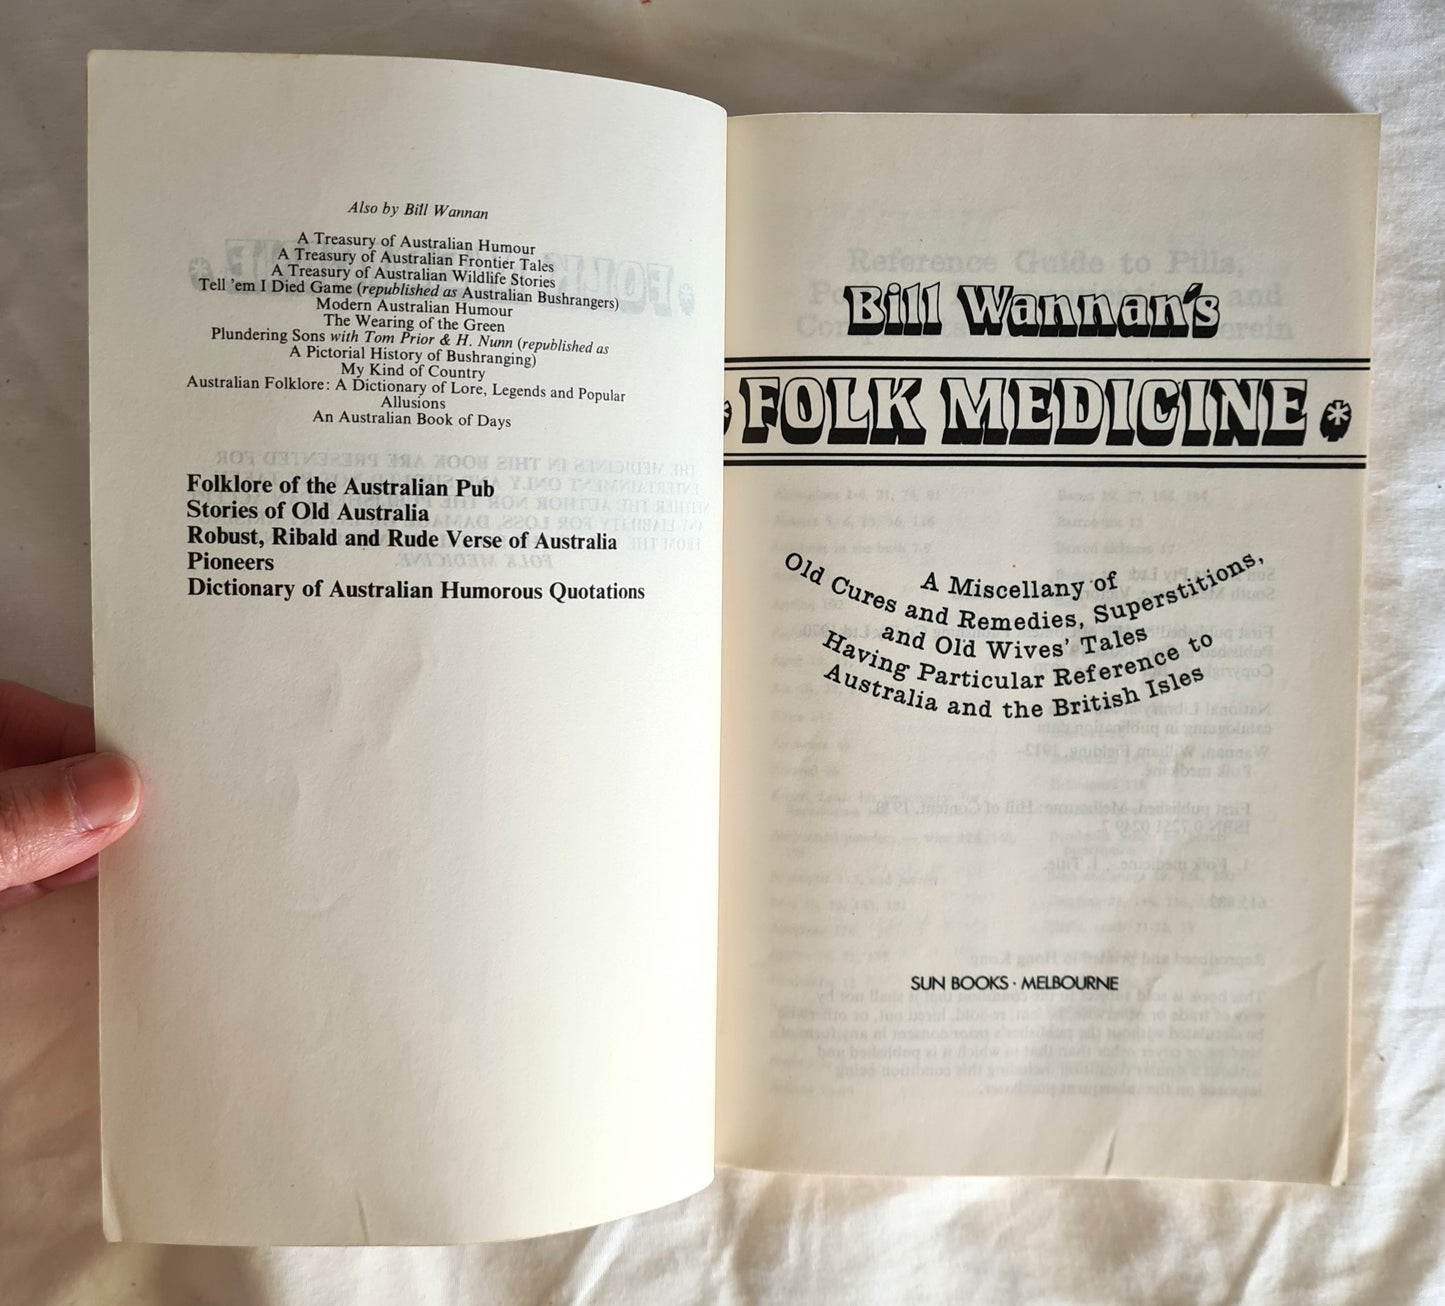 Bill Wannan’s Folk Medicine by Bill Wannan